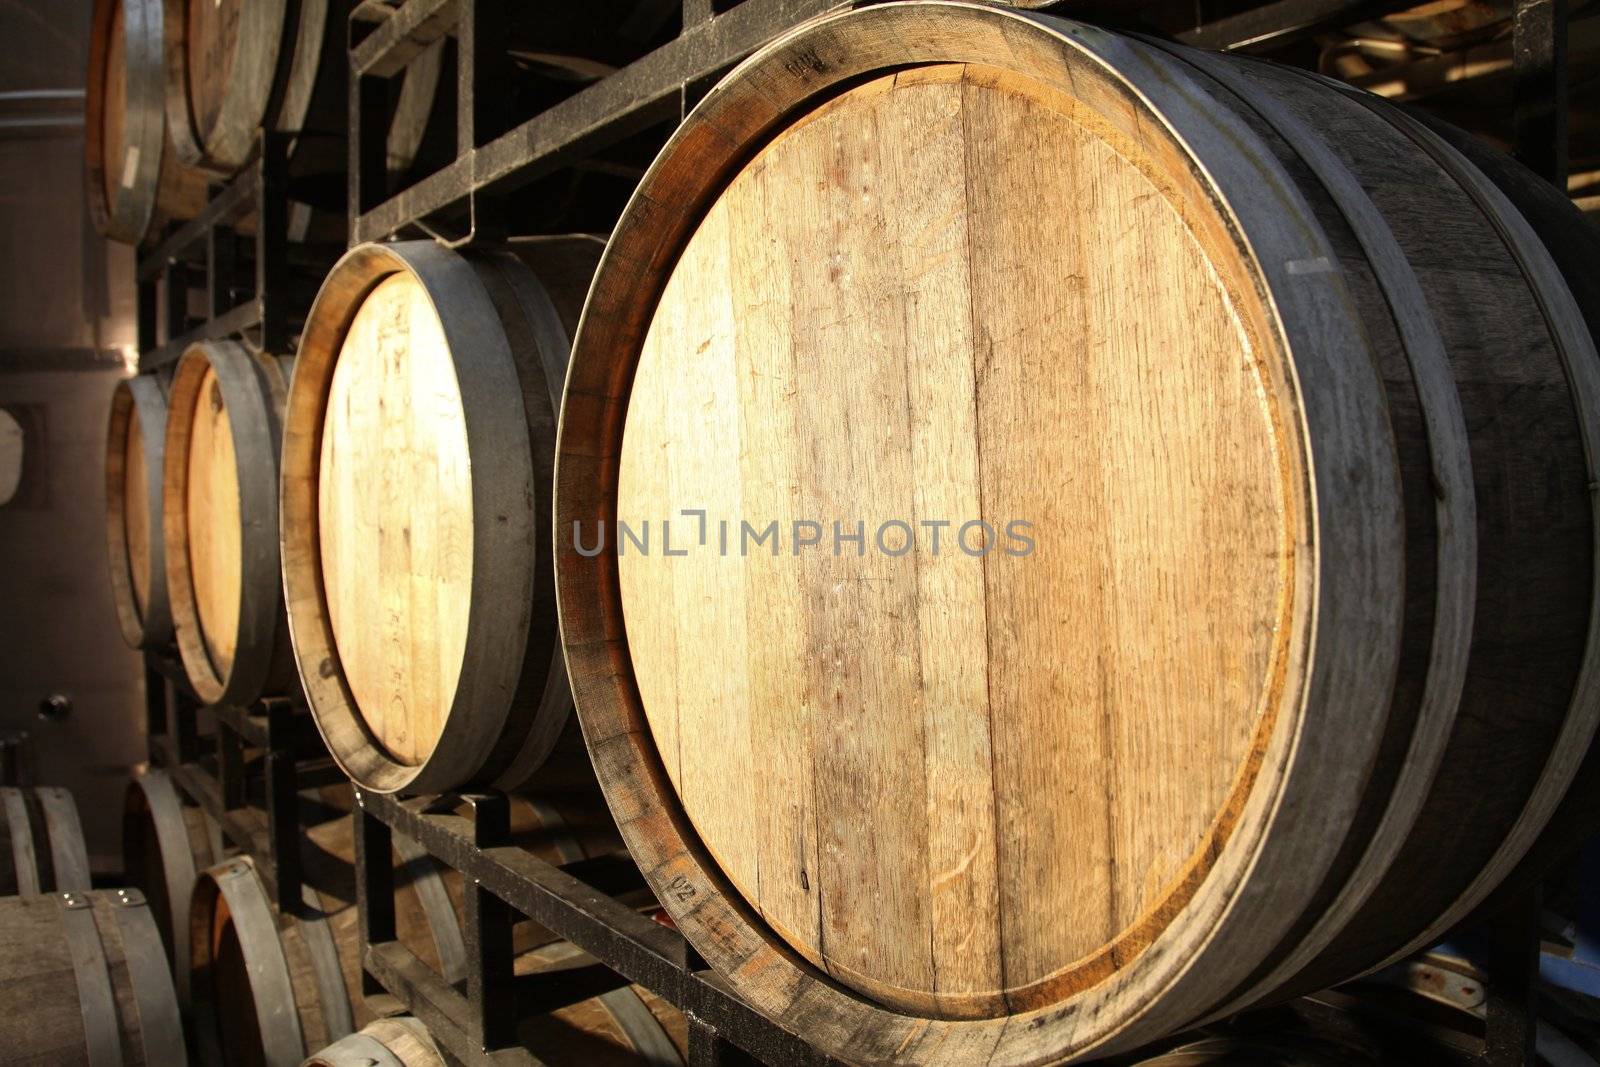 wooden wine barrels in a wine cellar